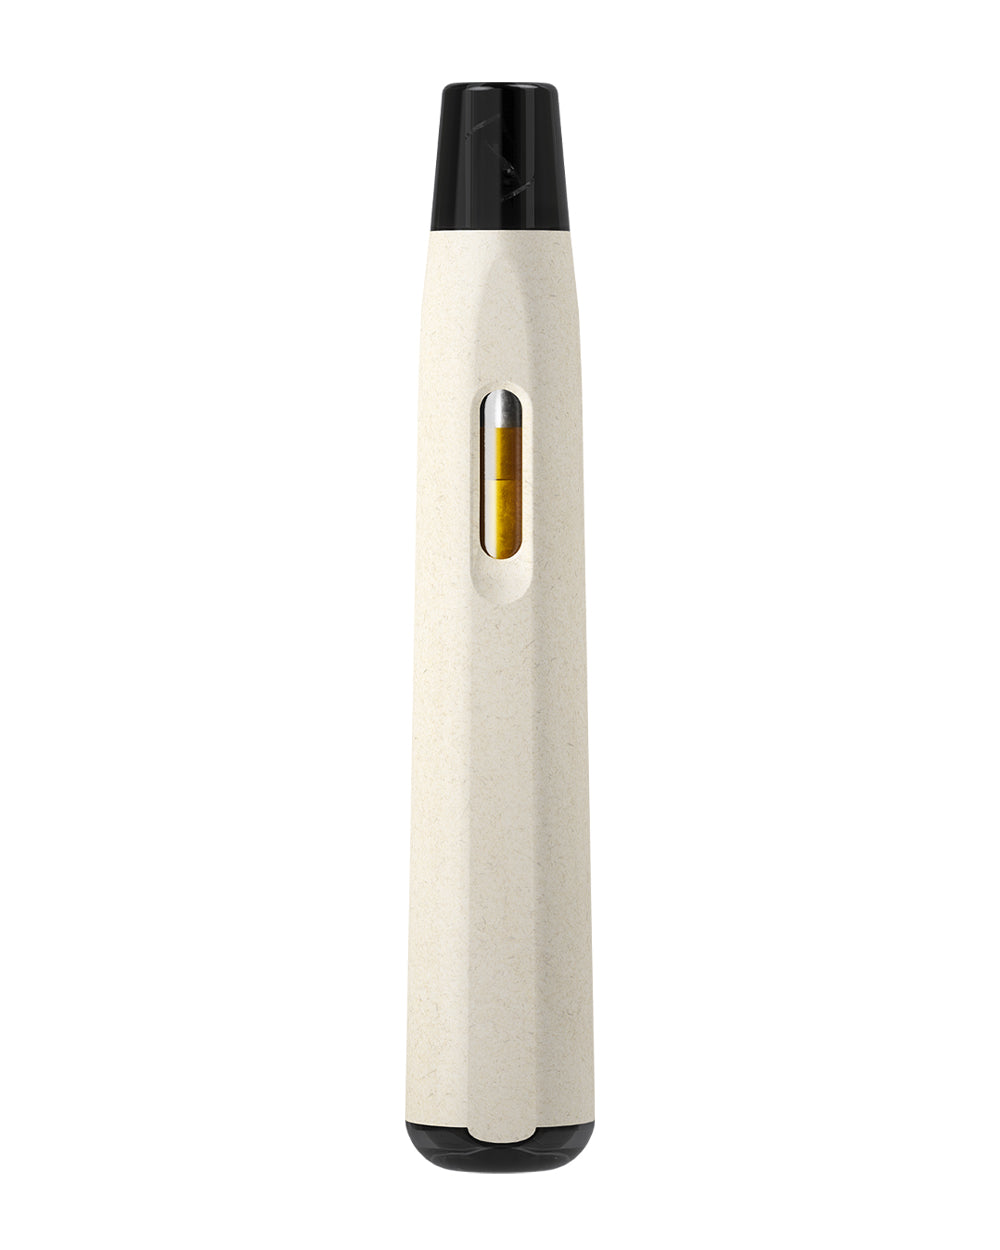 AVD | Stem White Hemp Plastic Blend Rechargeable Disposable Vape Pen w/ Black Vortex Mouthpiece | 1mL - 220 mAh  - 1